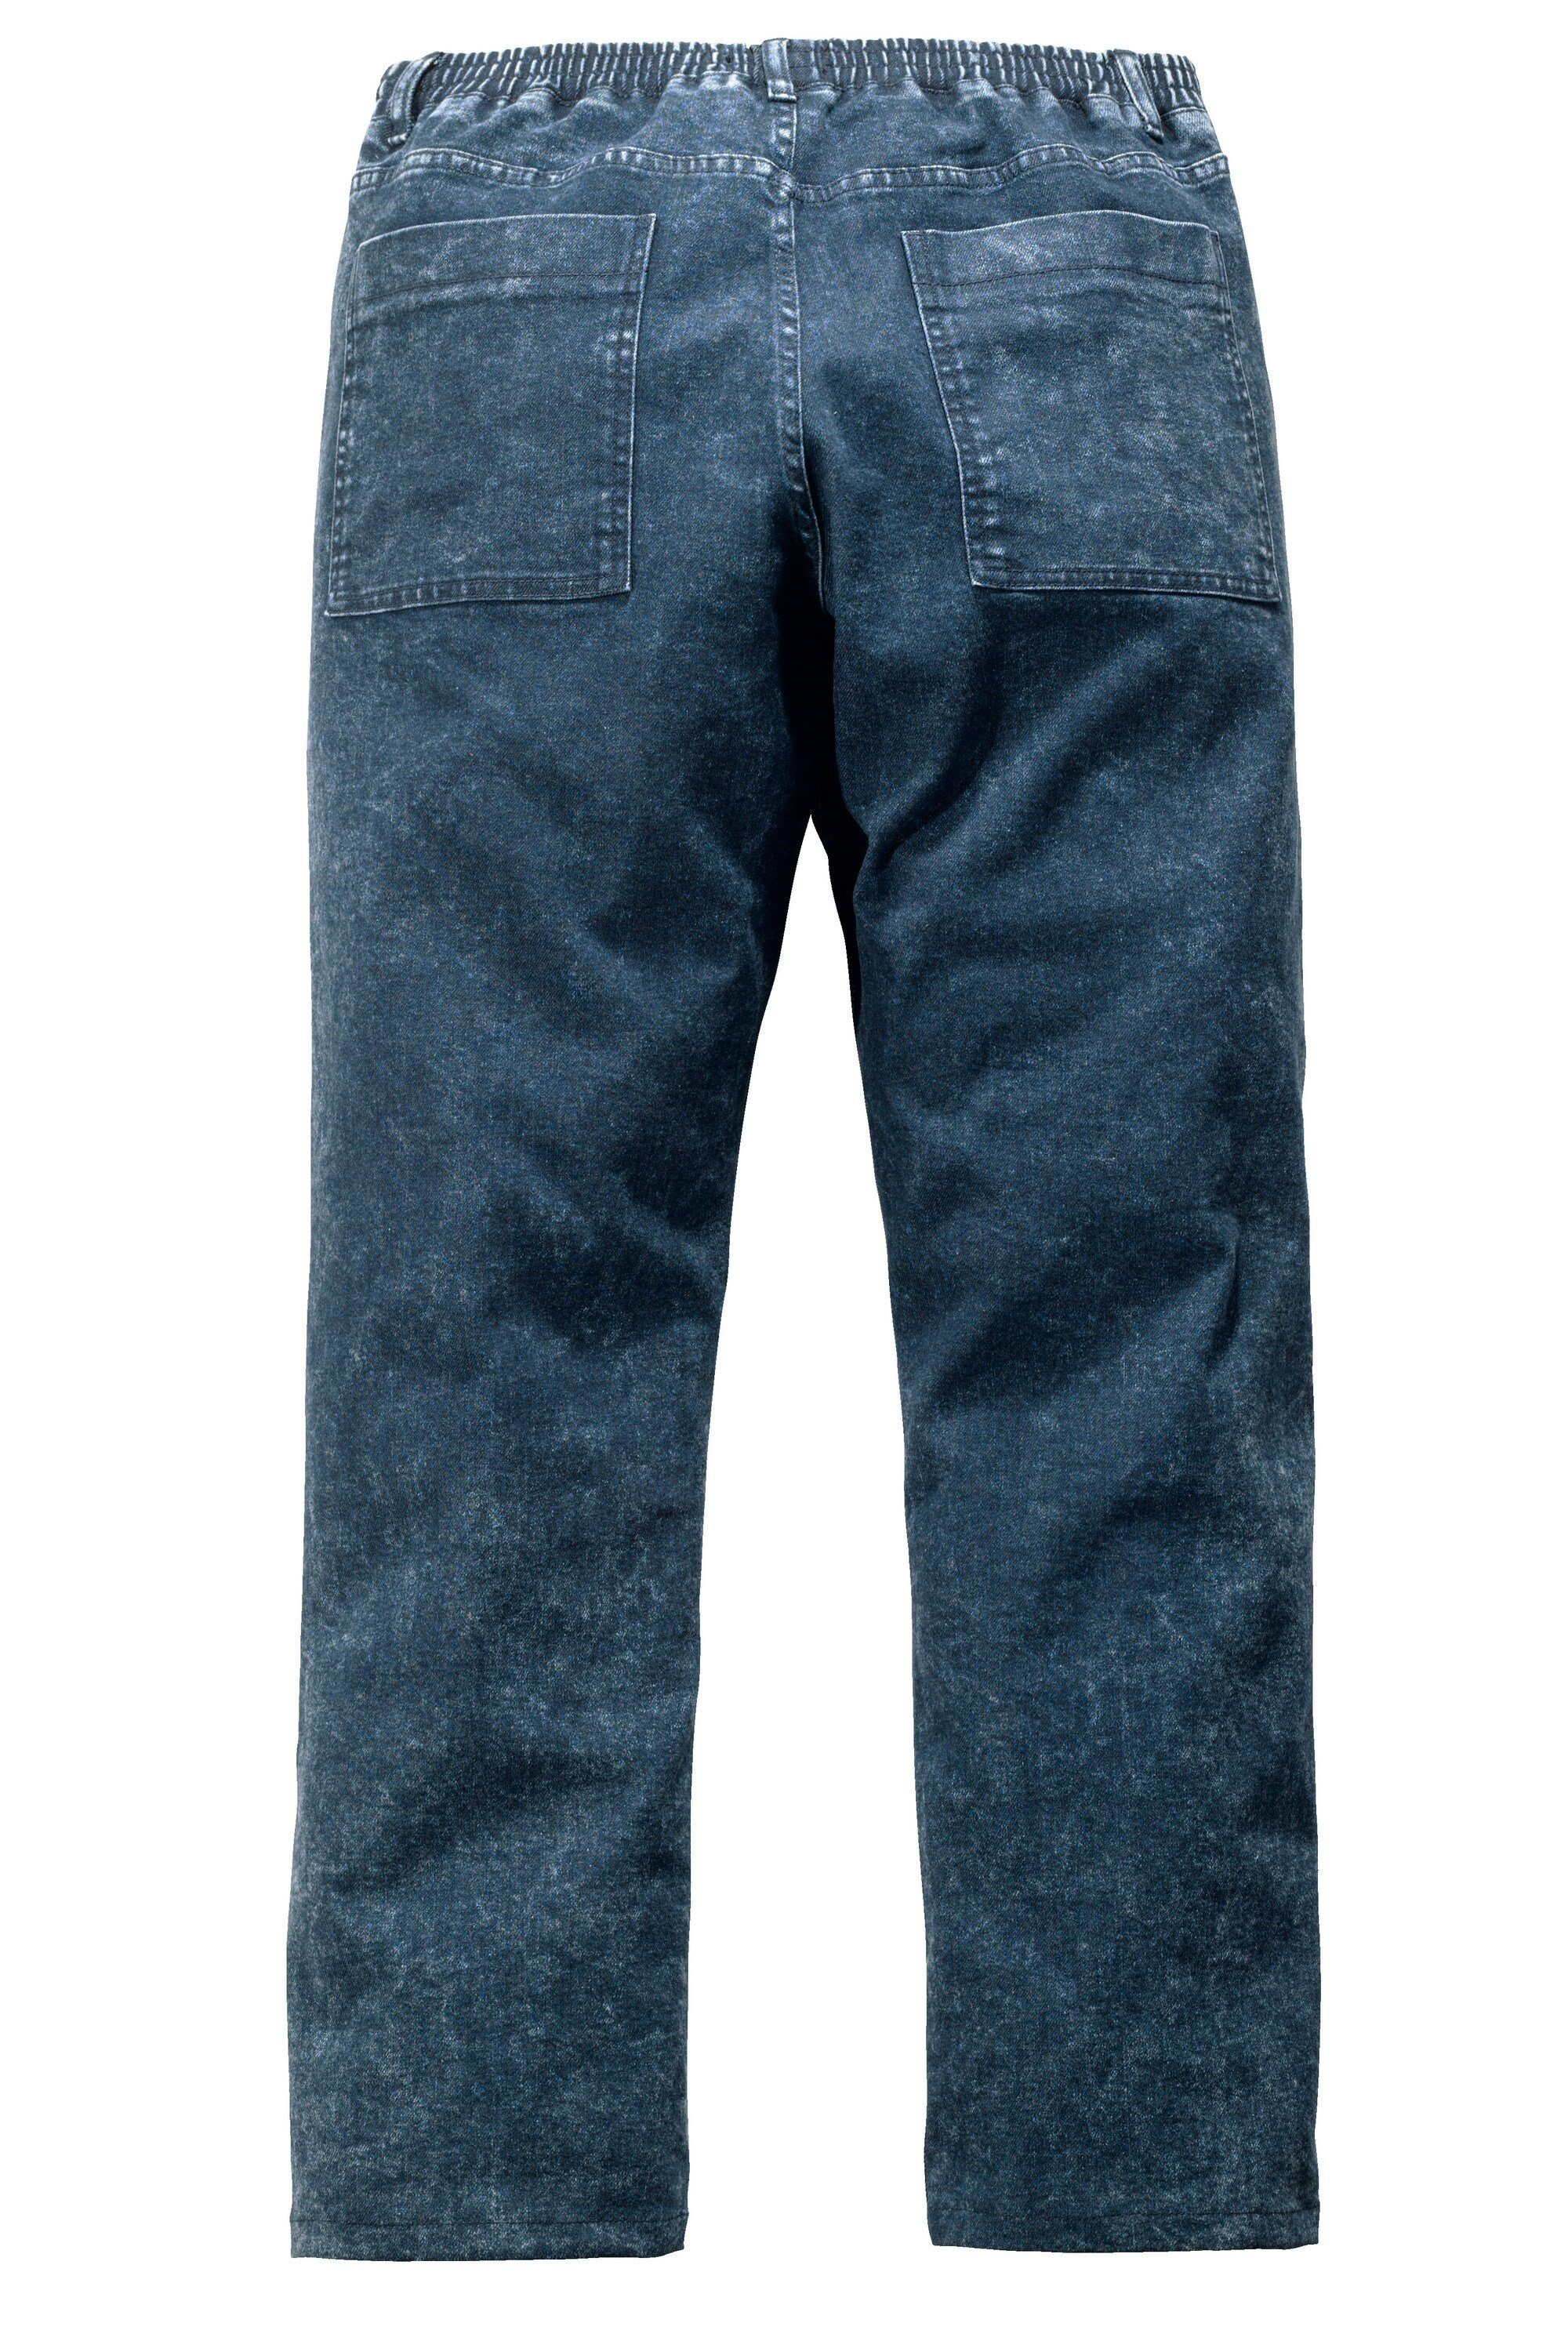 Spezialschnitt Men Jeans Plus dunkelblau 5-Pocket-Jeans